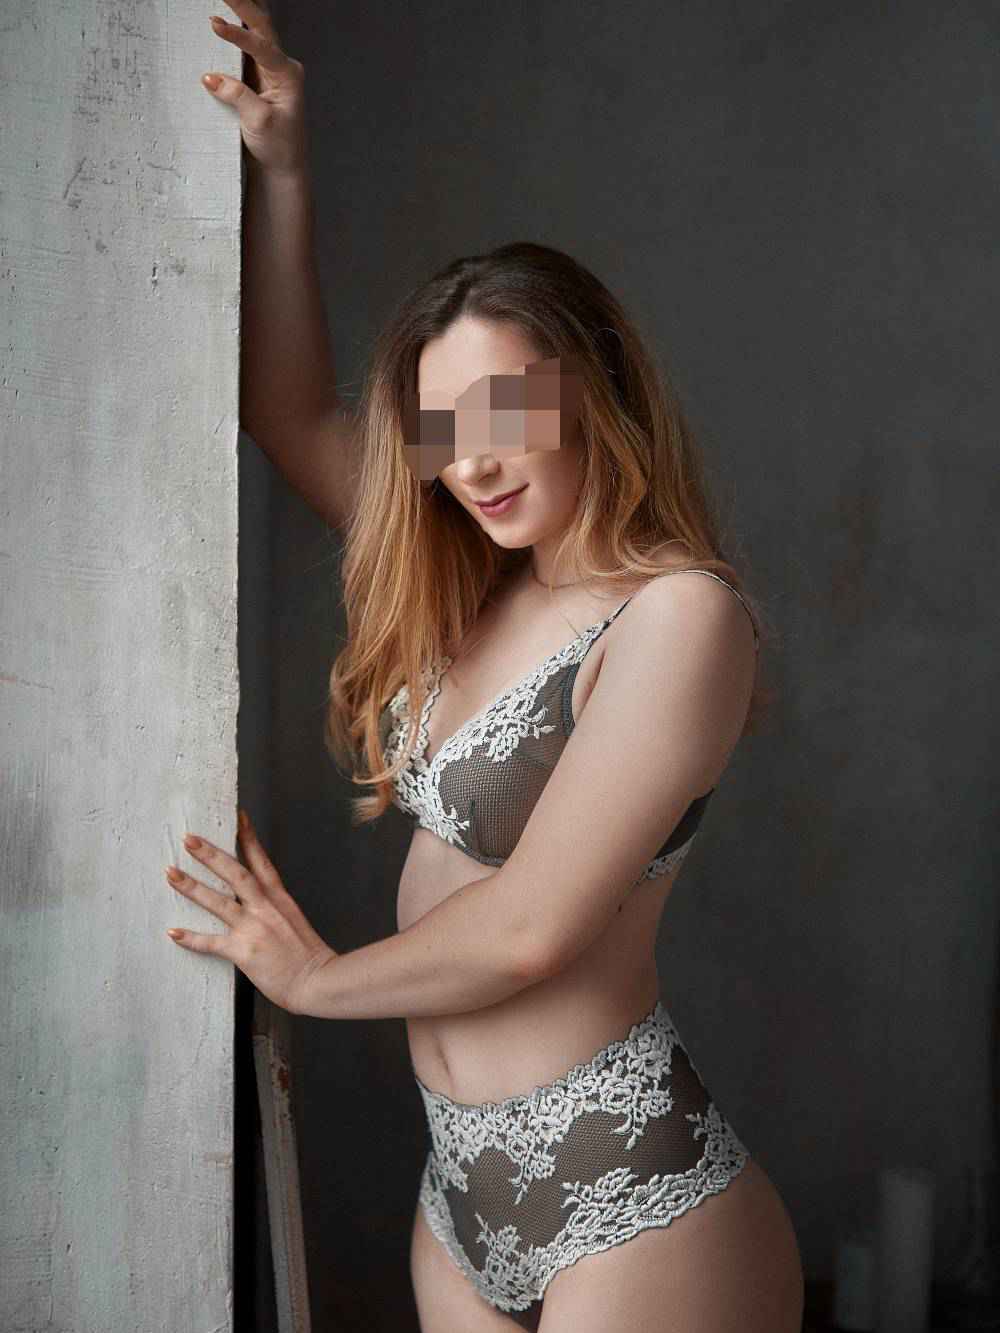 Проститутки Киева: Эля, возраст 23 года